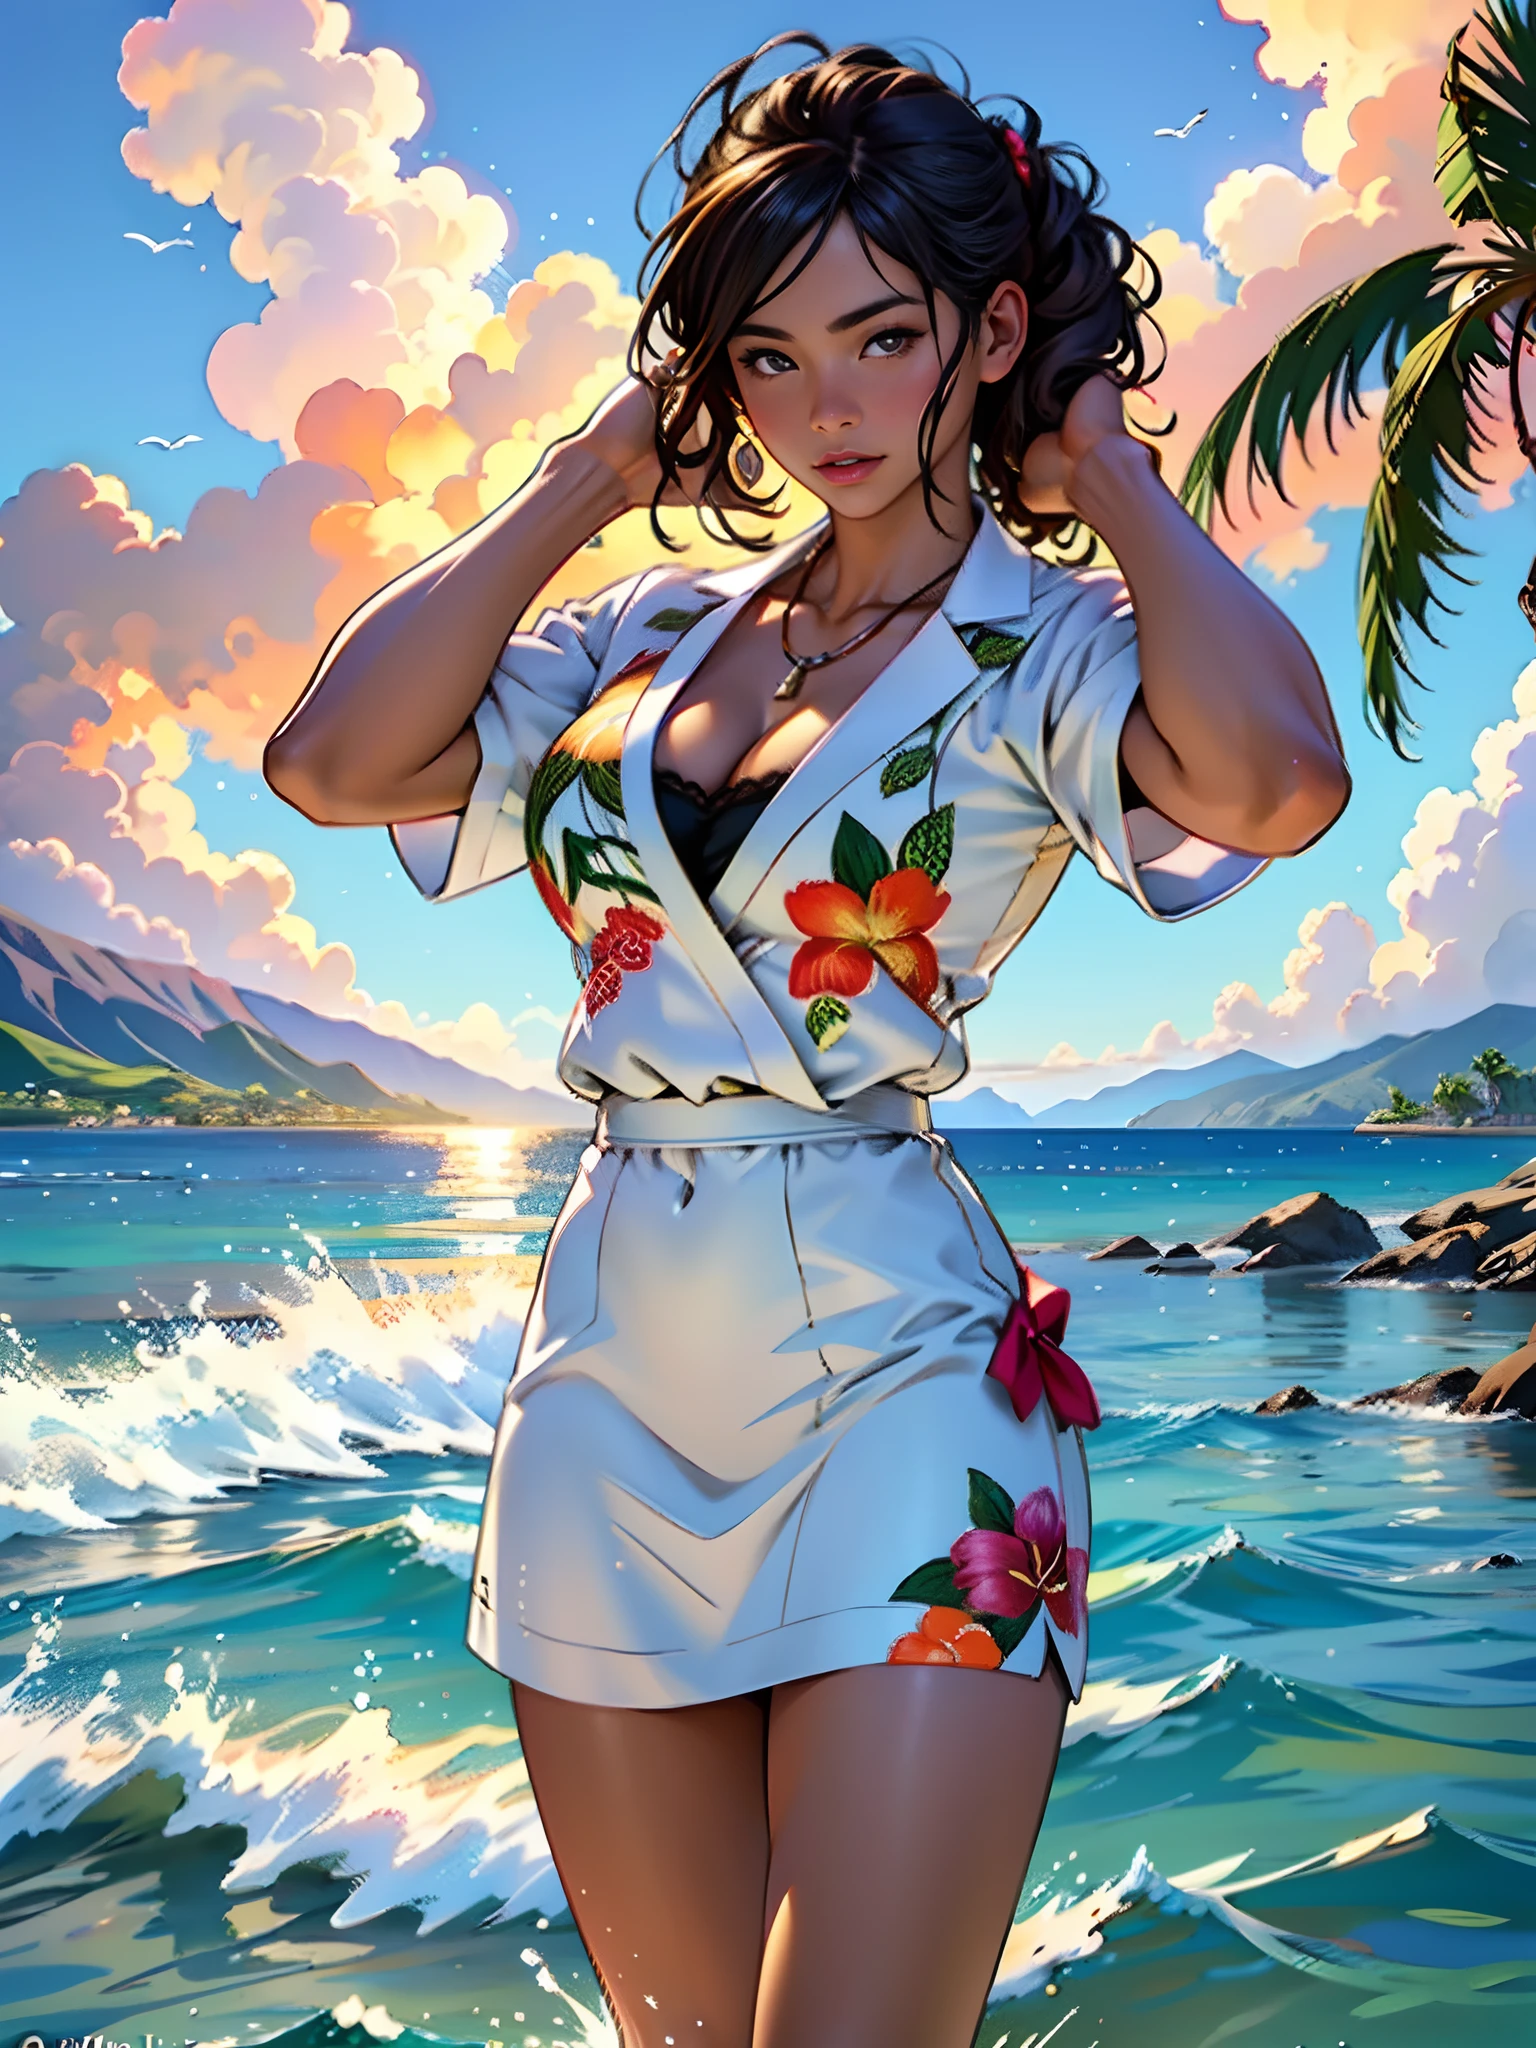 ハワイラハイナは後ろで火を燃やします, 水辺から絵を描く1人の女の子, ハイメ・フリアスによるスタイル, 最高品質, 現実的, 受賞歴のあるカラーイラスト, (複雑な詳細: 1.2), (細かい部分)